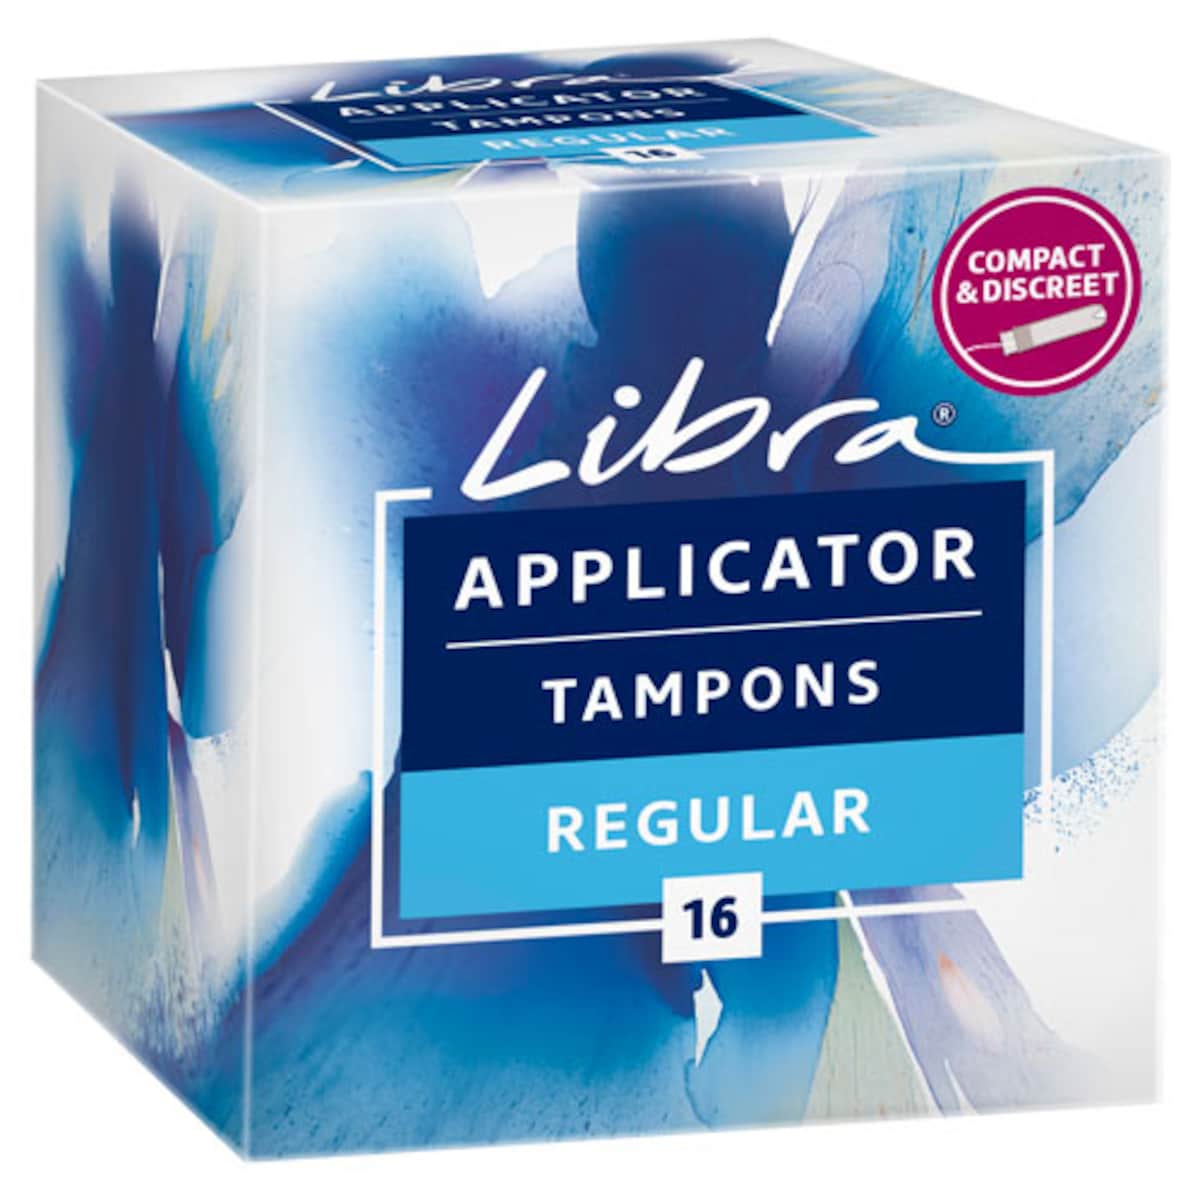 Libra Original Tampons Regular Applicator 16 Pack